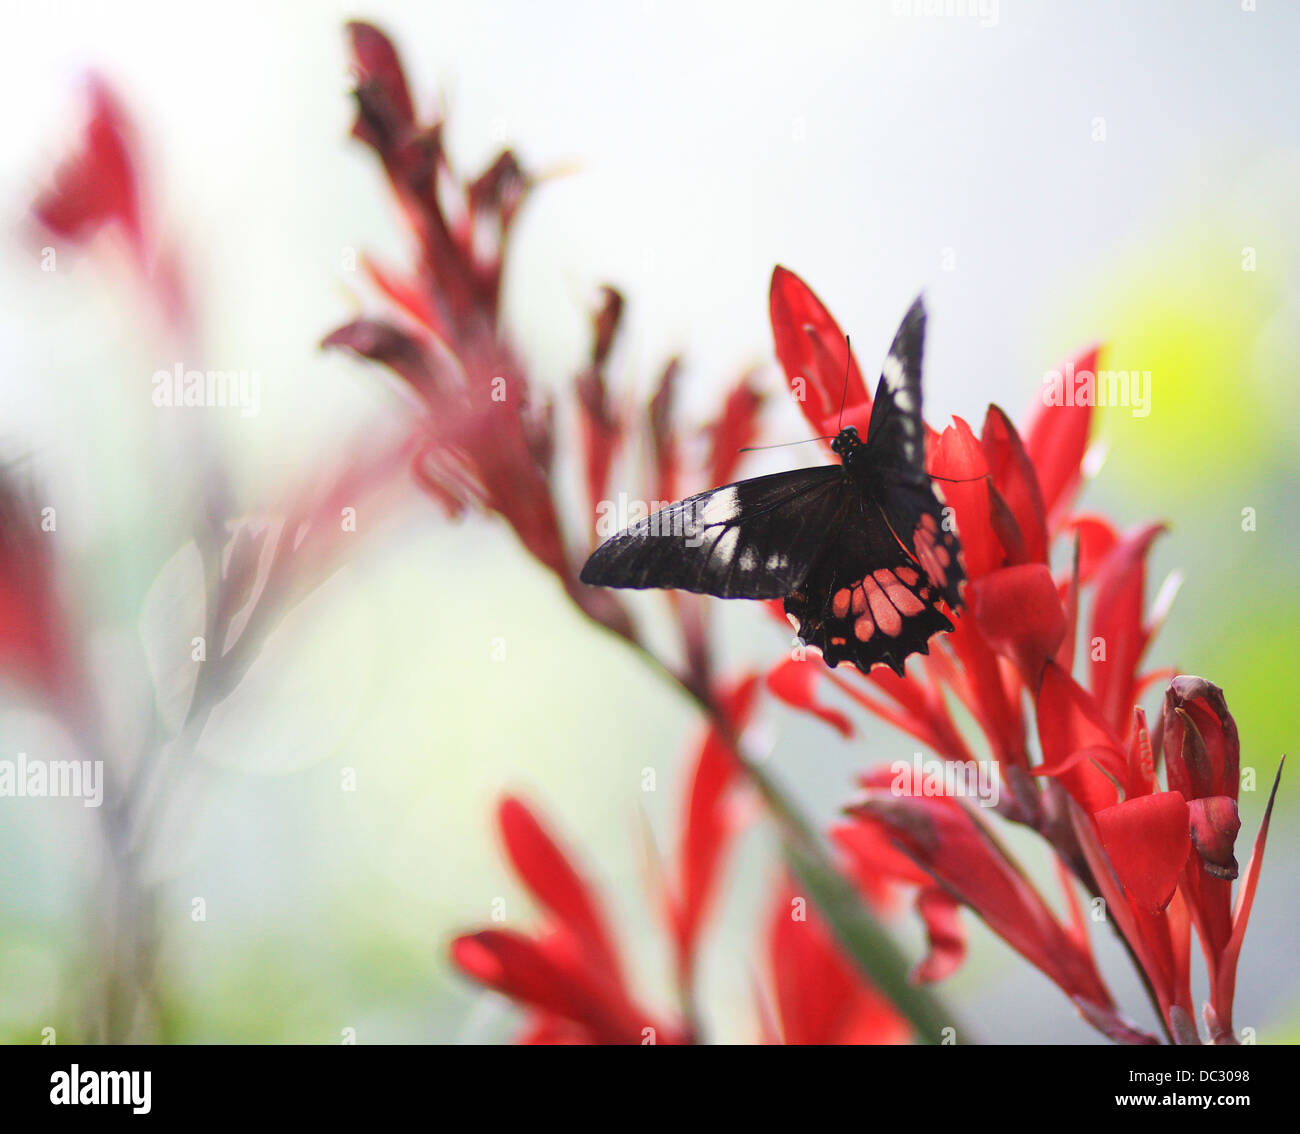 Mormon Papilio polytes (commune),romulus,femme,perché sur une fleur. C'est une espèce commune de swallowtail butterfly. L'Asie. Banque D'Images